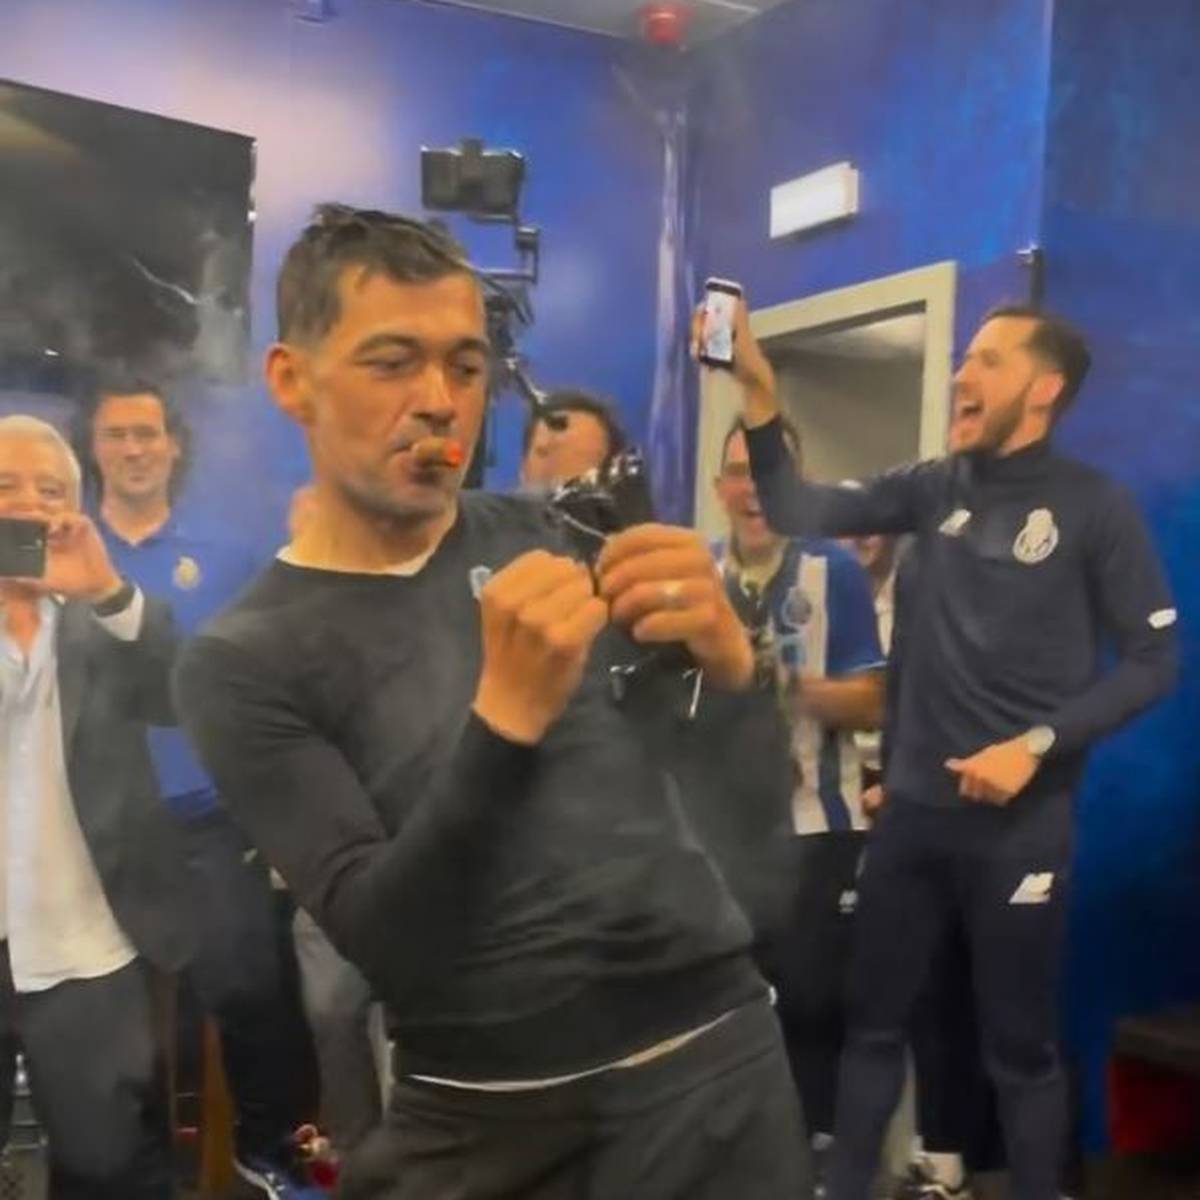 Zigarre und Gaga-Tanz: Portos Meistertrainer geht viral